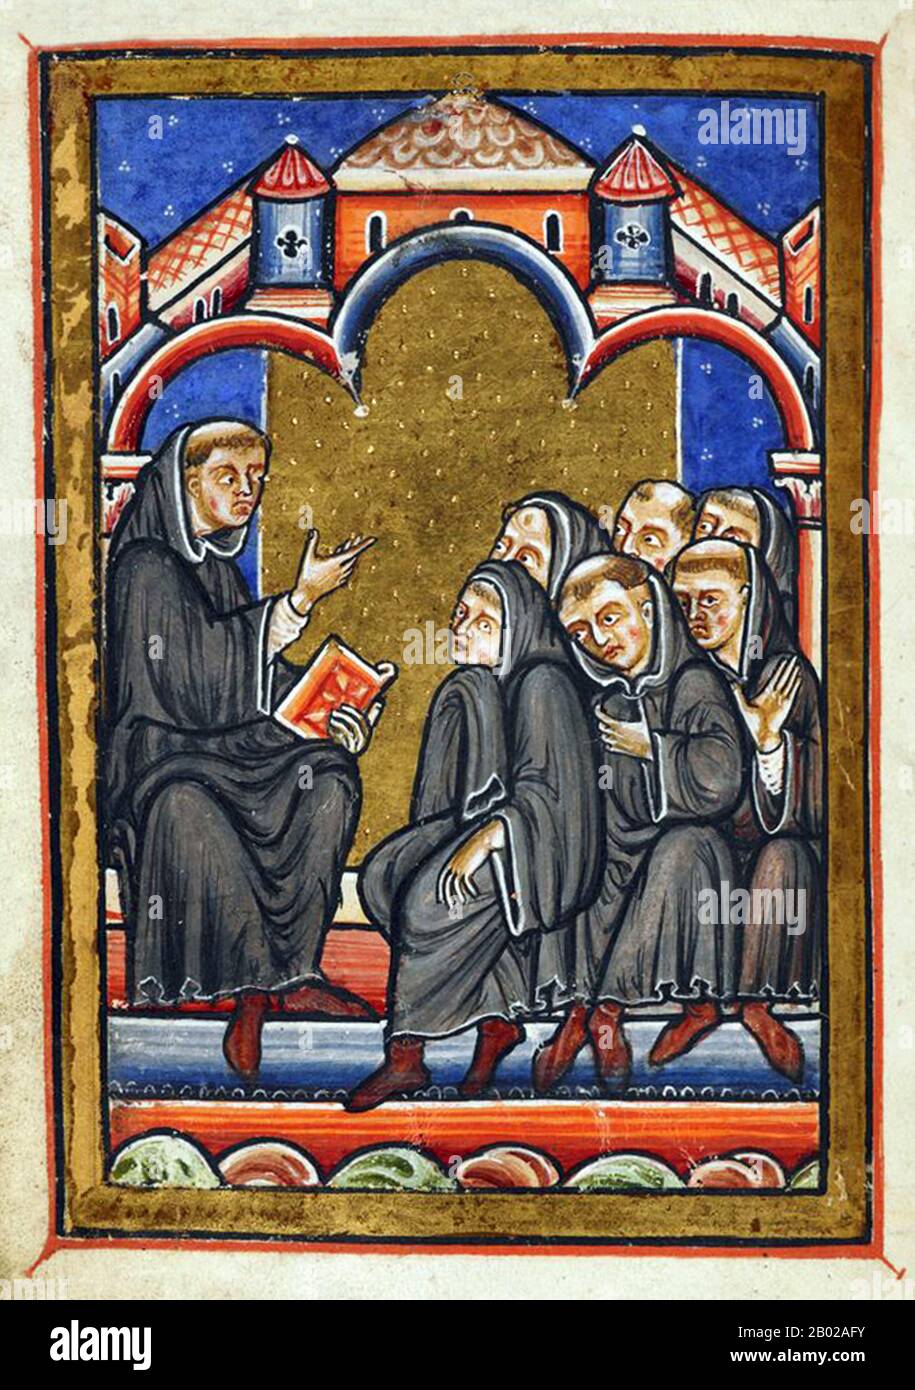 Saint Cuthbert (c. 634 – 20 mars 687) était un moine anglo-saxon, évêque et ermit, associé aux monastères de Melrose et de Lindisfarne dans le Royaume de Thuringe. Après sa mort, il est devenu l'un des saints médiévaux les plus importants d'Angleterre, avec un culte centré sur la cathédrale de Durham. Cuthbert est considéré comme le saint patron du nord de l'Angleterre. Son jour de fête est le 20 mars. Il a grandi près de la nouvelle fusillade de Lindisfarne à l'abbaye de Melrose, qui est aujourd'hui en Écosse mais était alors en Thuringe. Il avait décidé de devenir moine après avoir vu une vision la nuit en 651 que St Aidan, le Banque D'Images